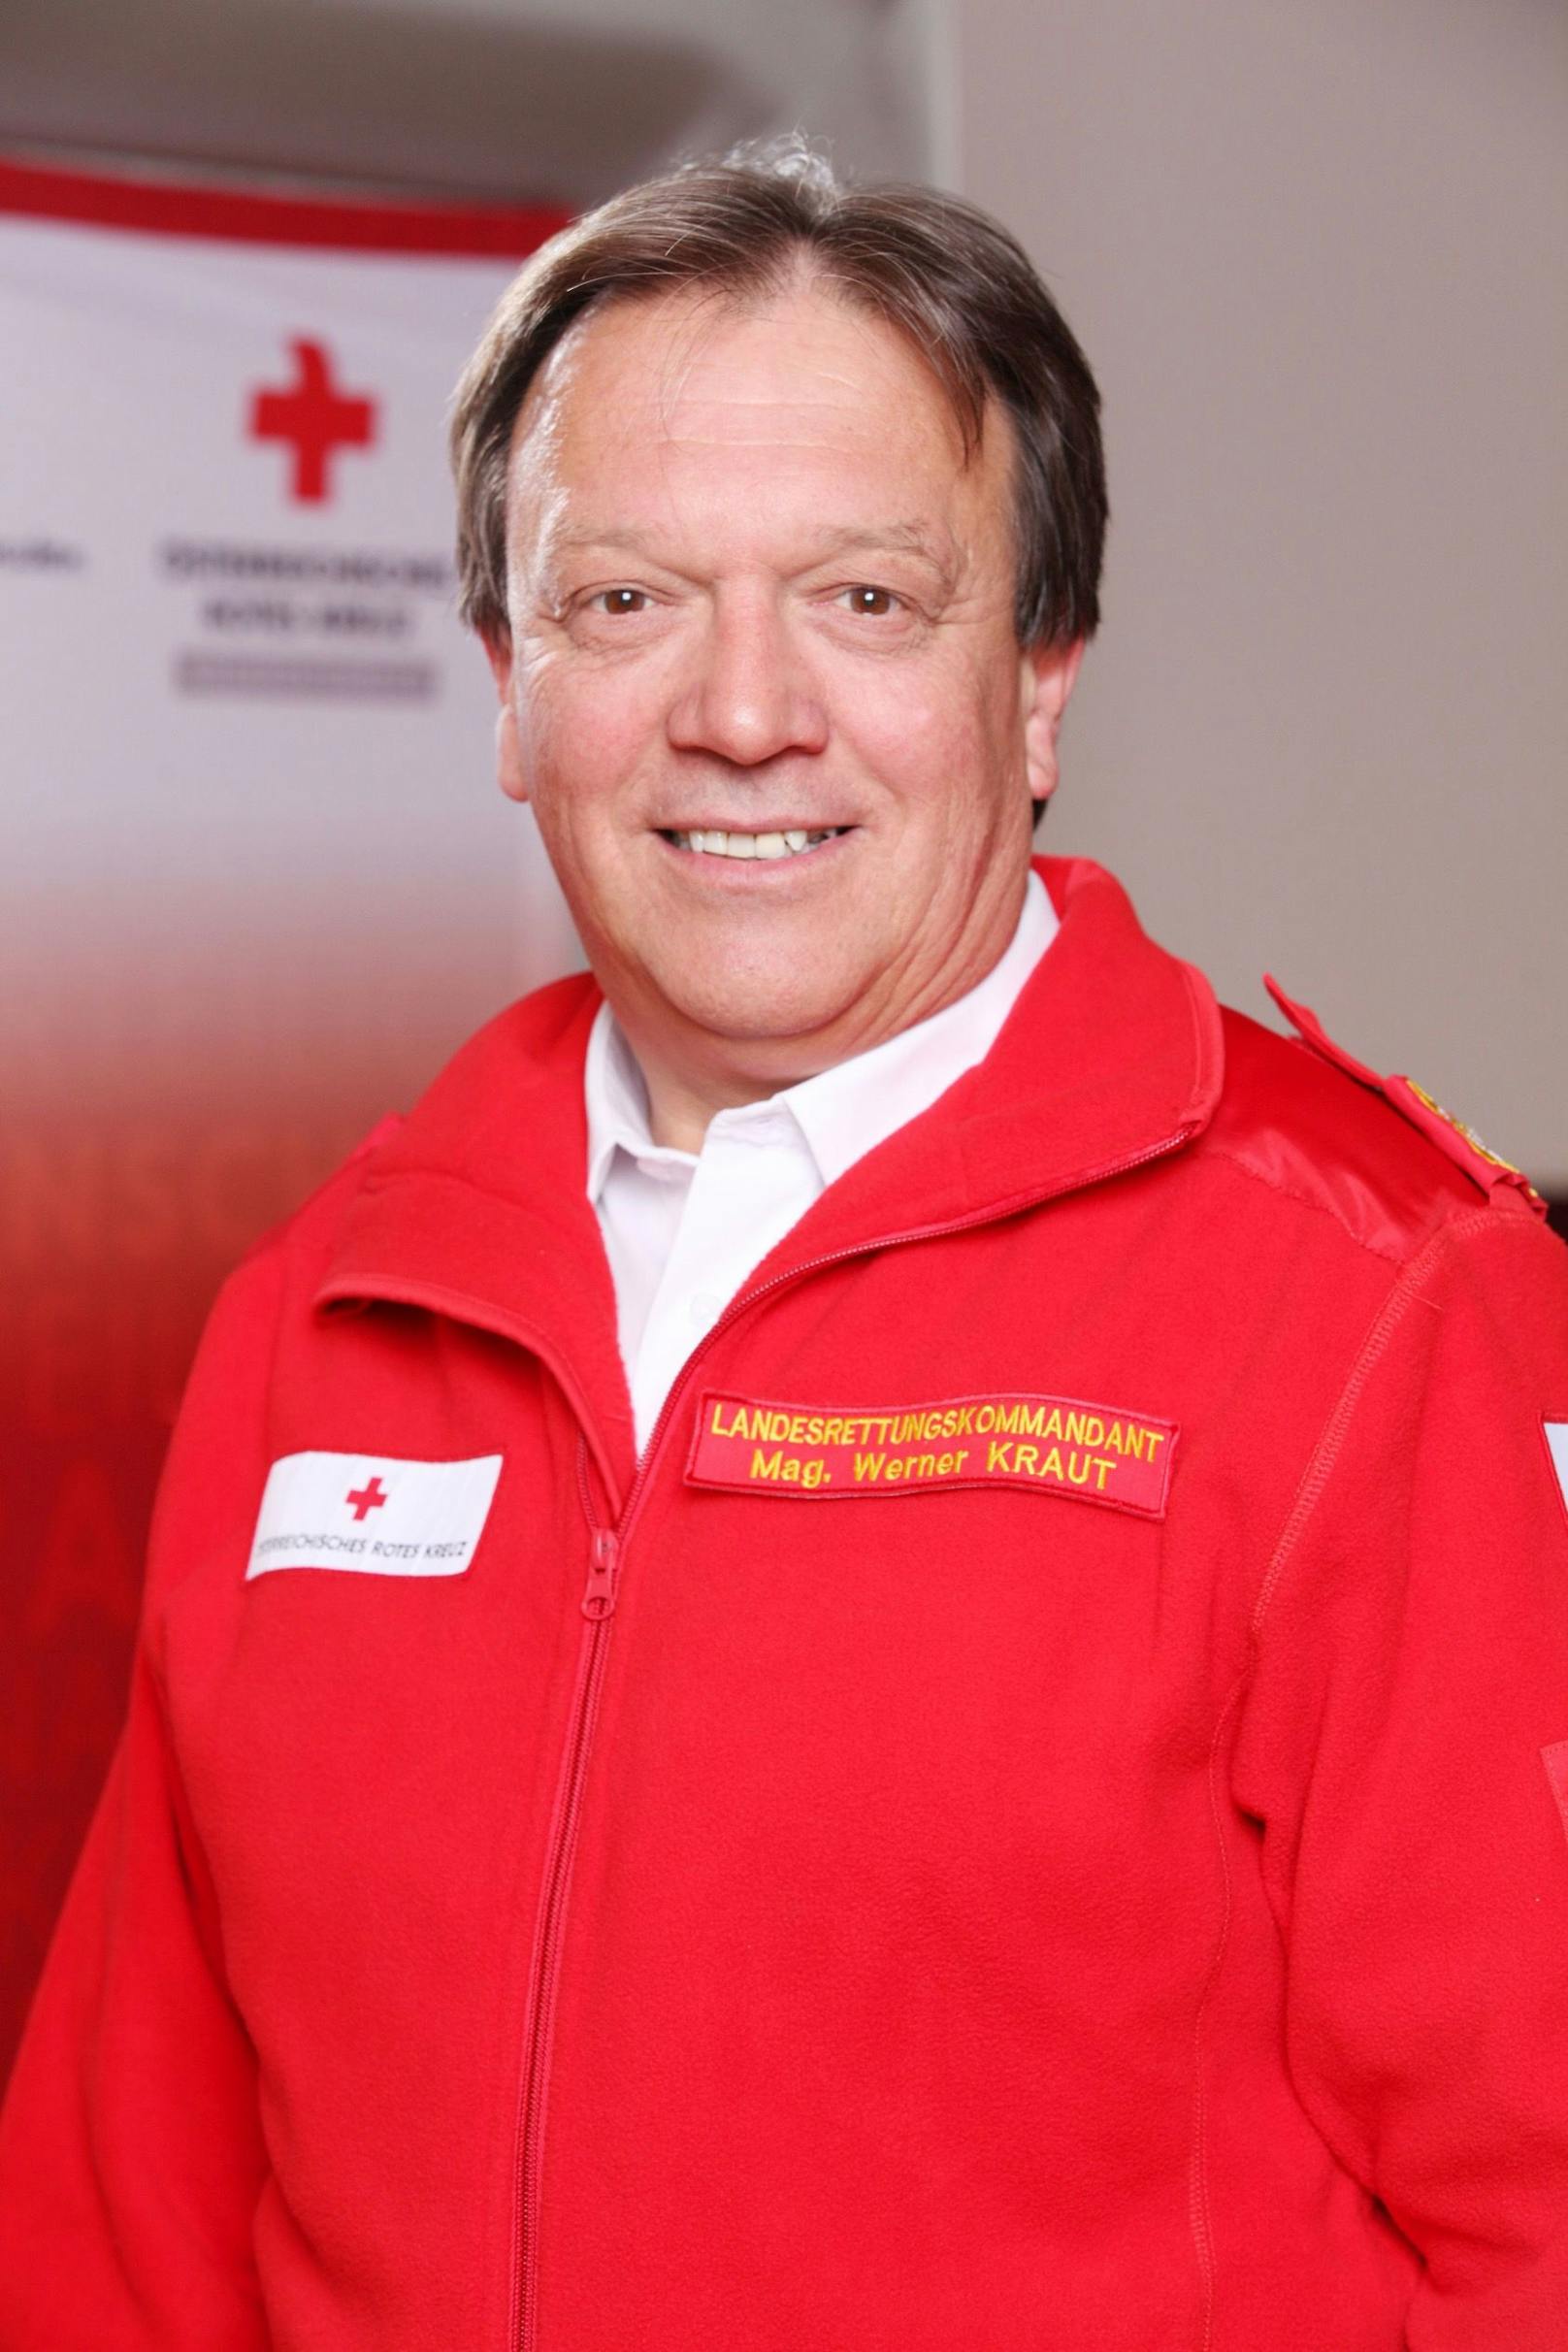 Laut Rettungskommandant&nbsp;Werner Kraut, Rotes Kreuz Niederösterreich, konnte trotz der Testungen der Rettungsdienst normal durchgeführt werden.